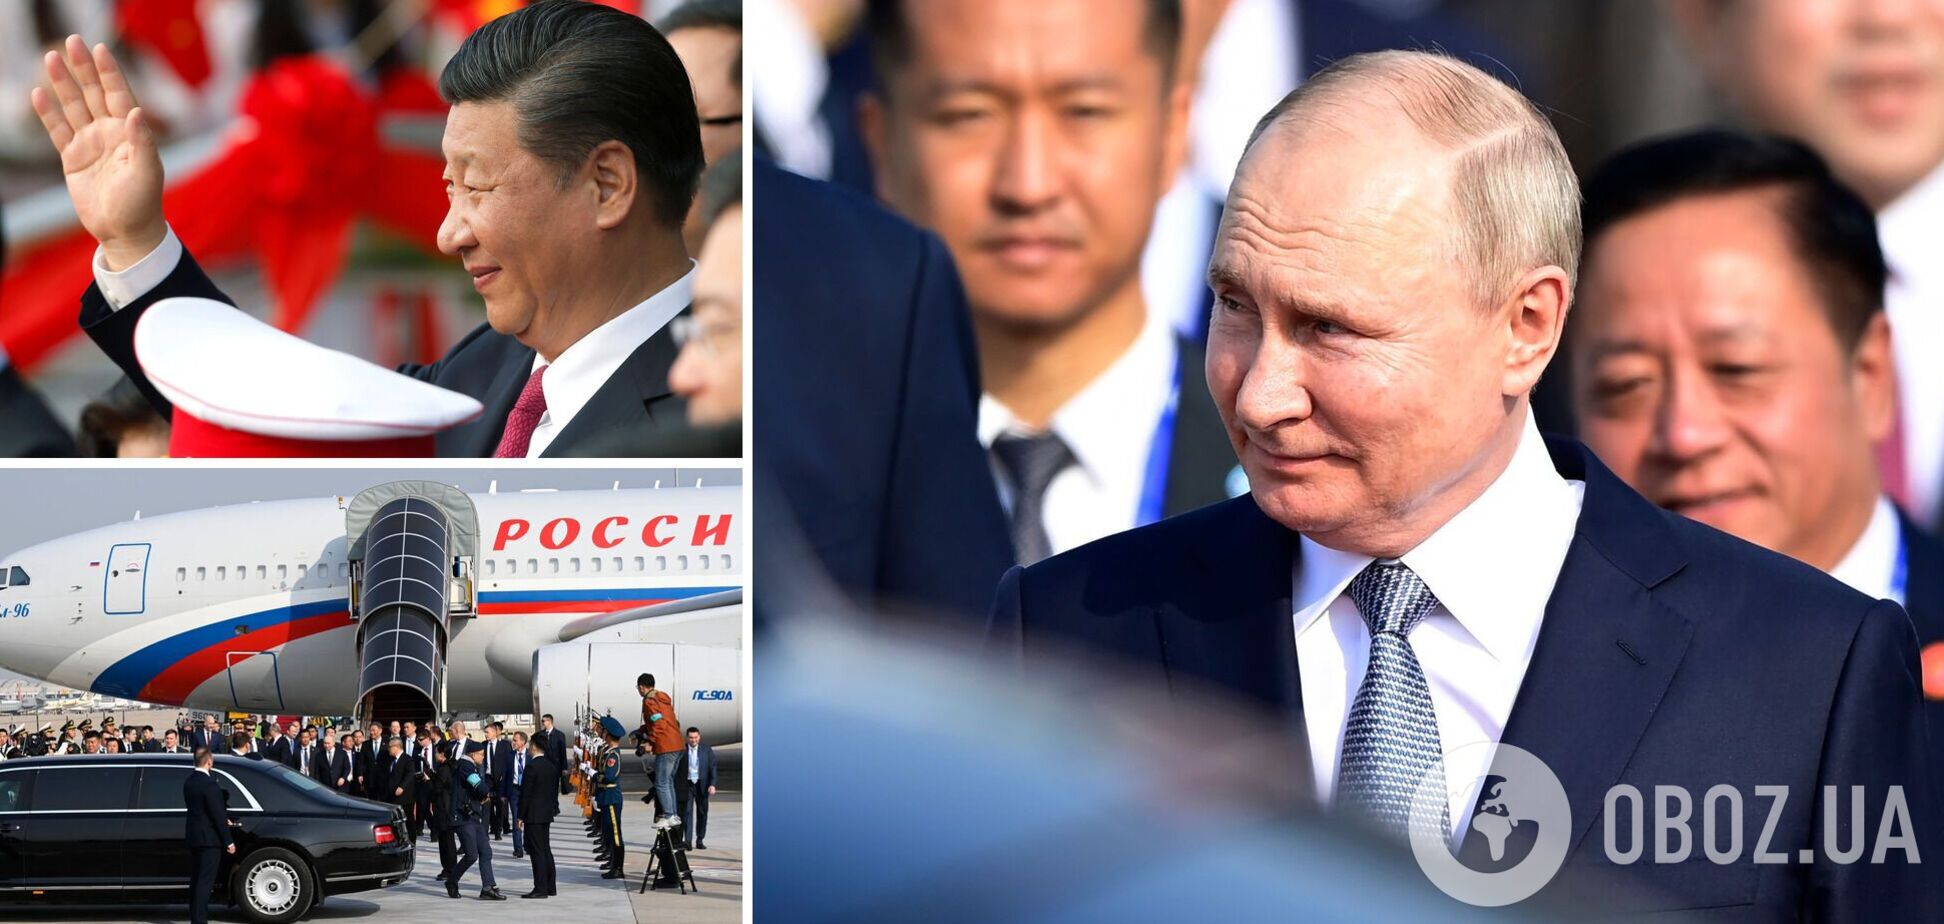 Візит Путіна до Китаю закінчився грандіозним провалом і небувалим приниженням